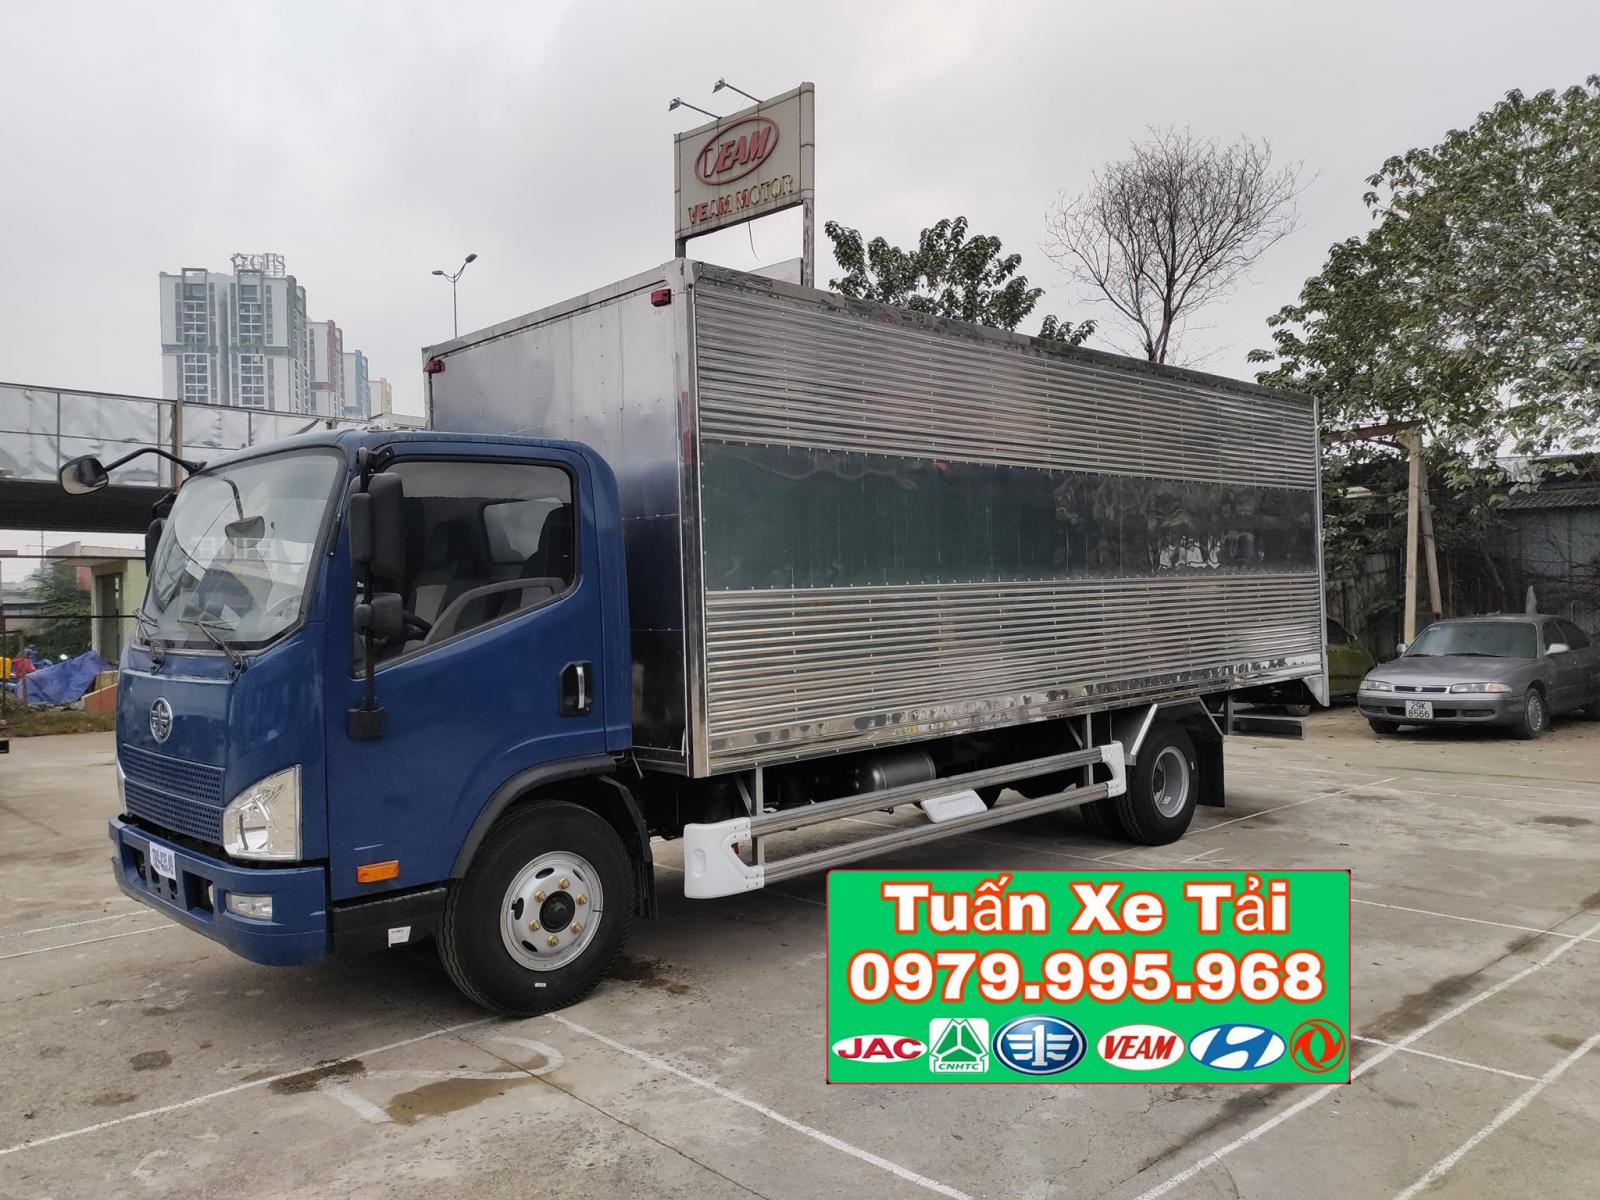 Bán xe tải Faw 8 tấn thùng kín 6m25, động cơ Weichai 140PS